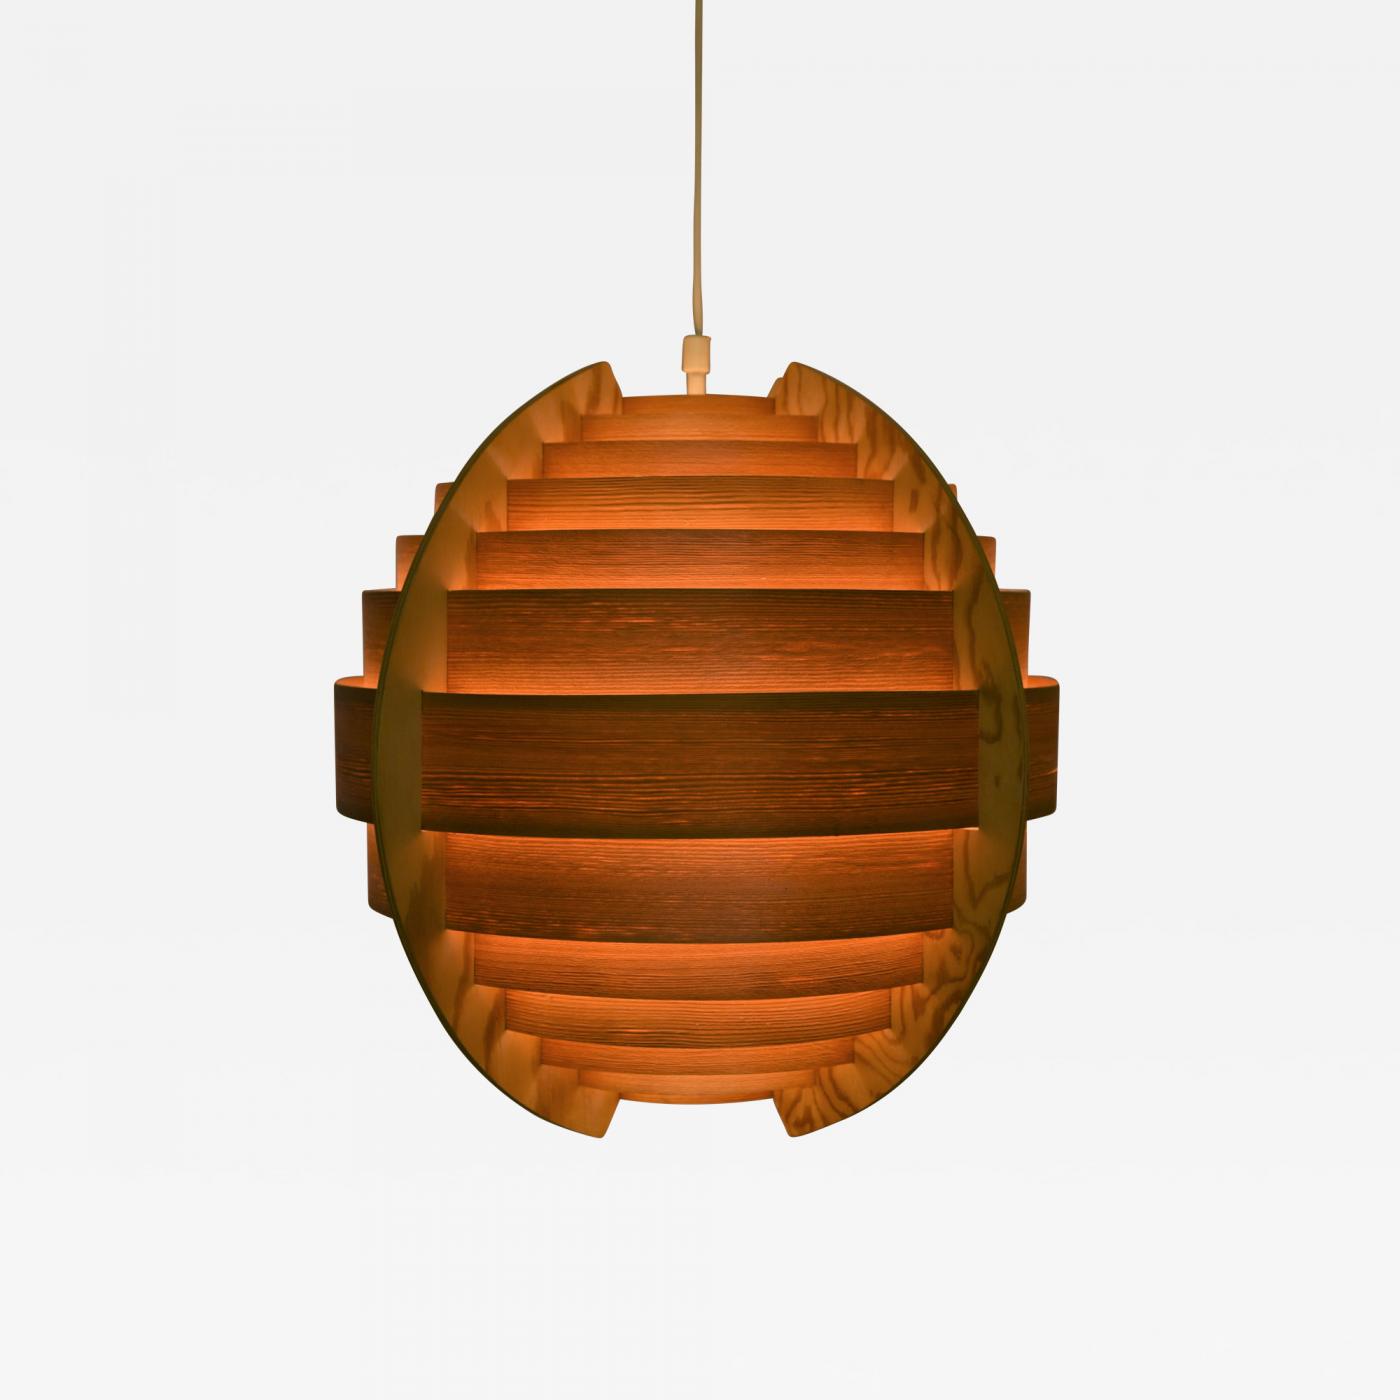 Kunstmatig medeklinker beton Hans-Agne Jakobsson - Swedish Ellysett Pine Sphere Pendant Lamp Designed by  Hans-Agne Jakobsson 1960´s